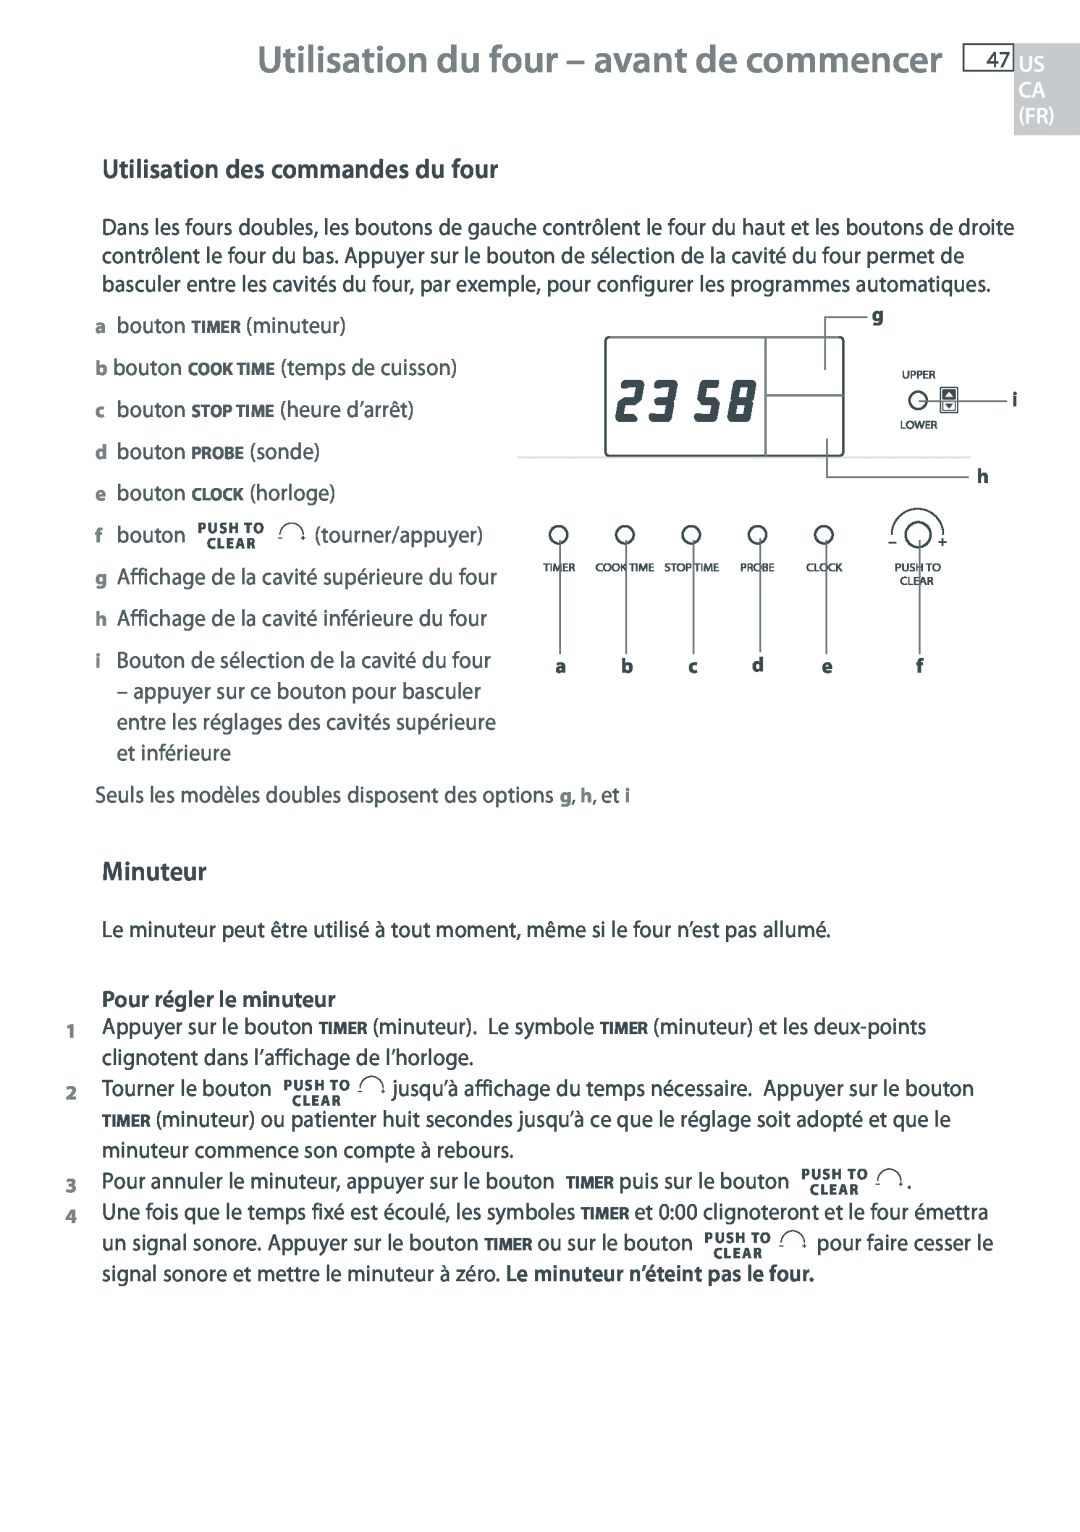 Fisher & Paykel OB30 manual Utilisation du four - avant de commencer, Utilisation des commandes du four, Minuteur 